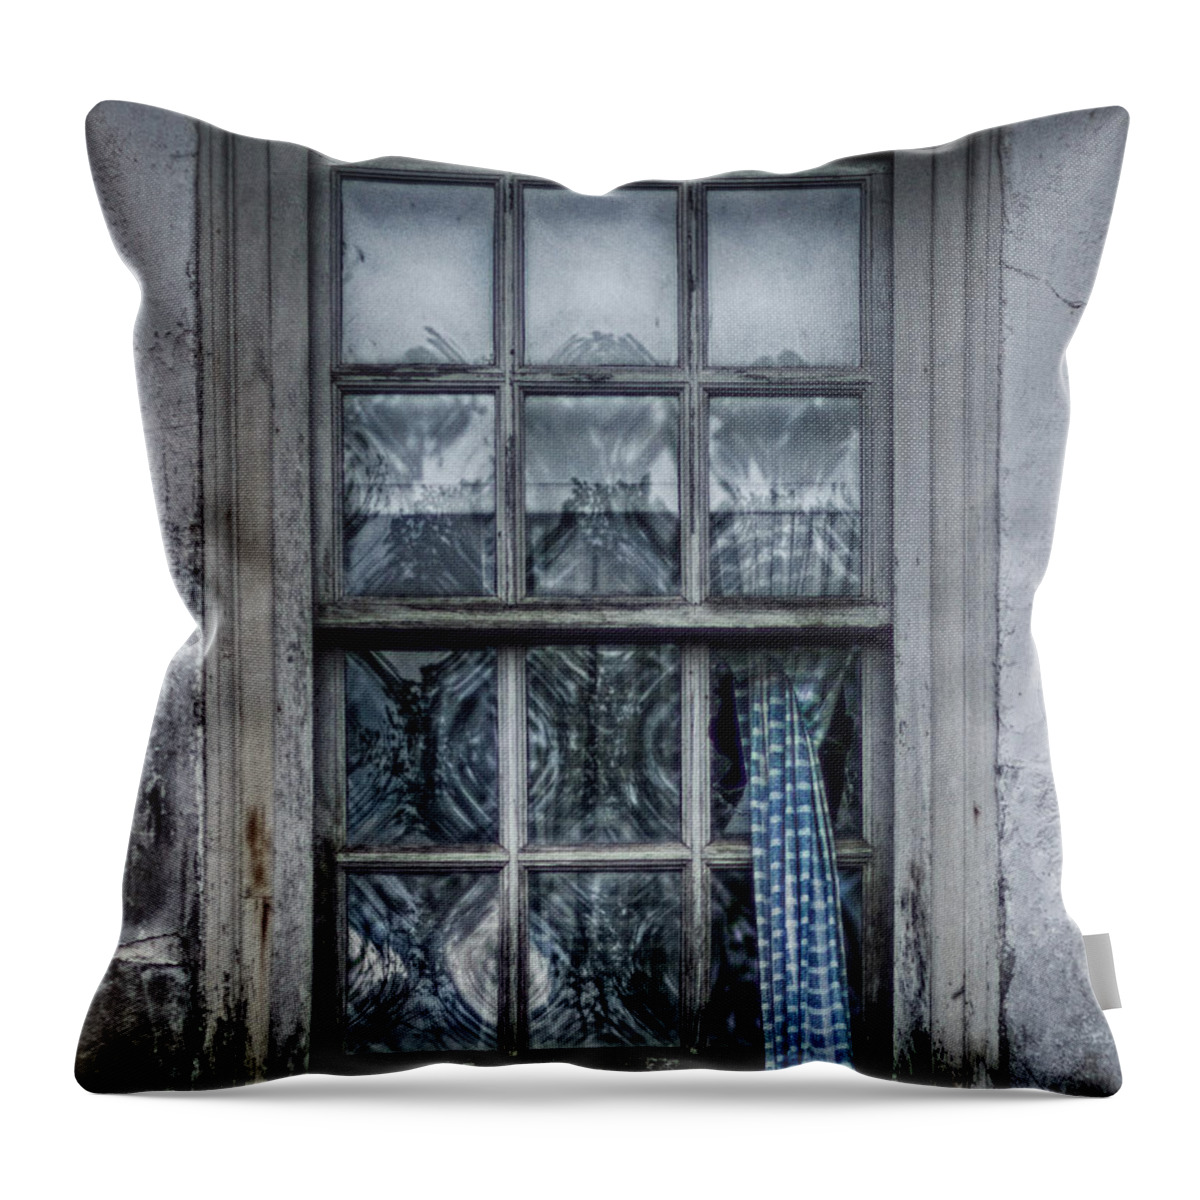 Window Throw Pillow featuring the photograph Forgotten Pane by Scott Wyatt